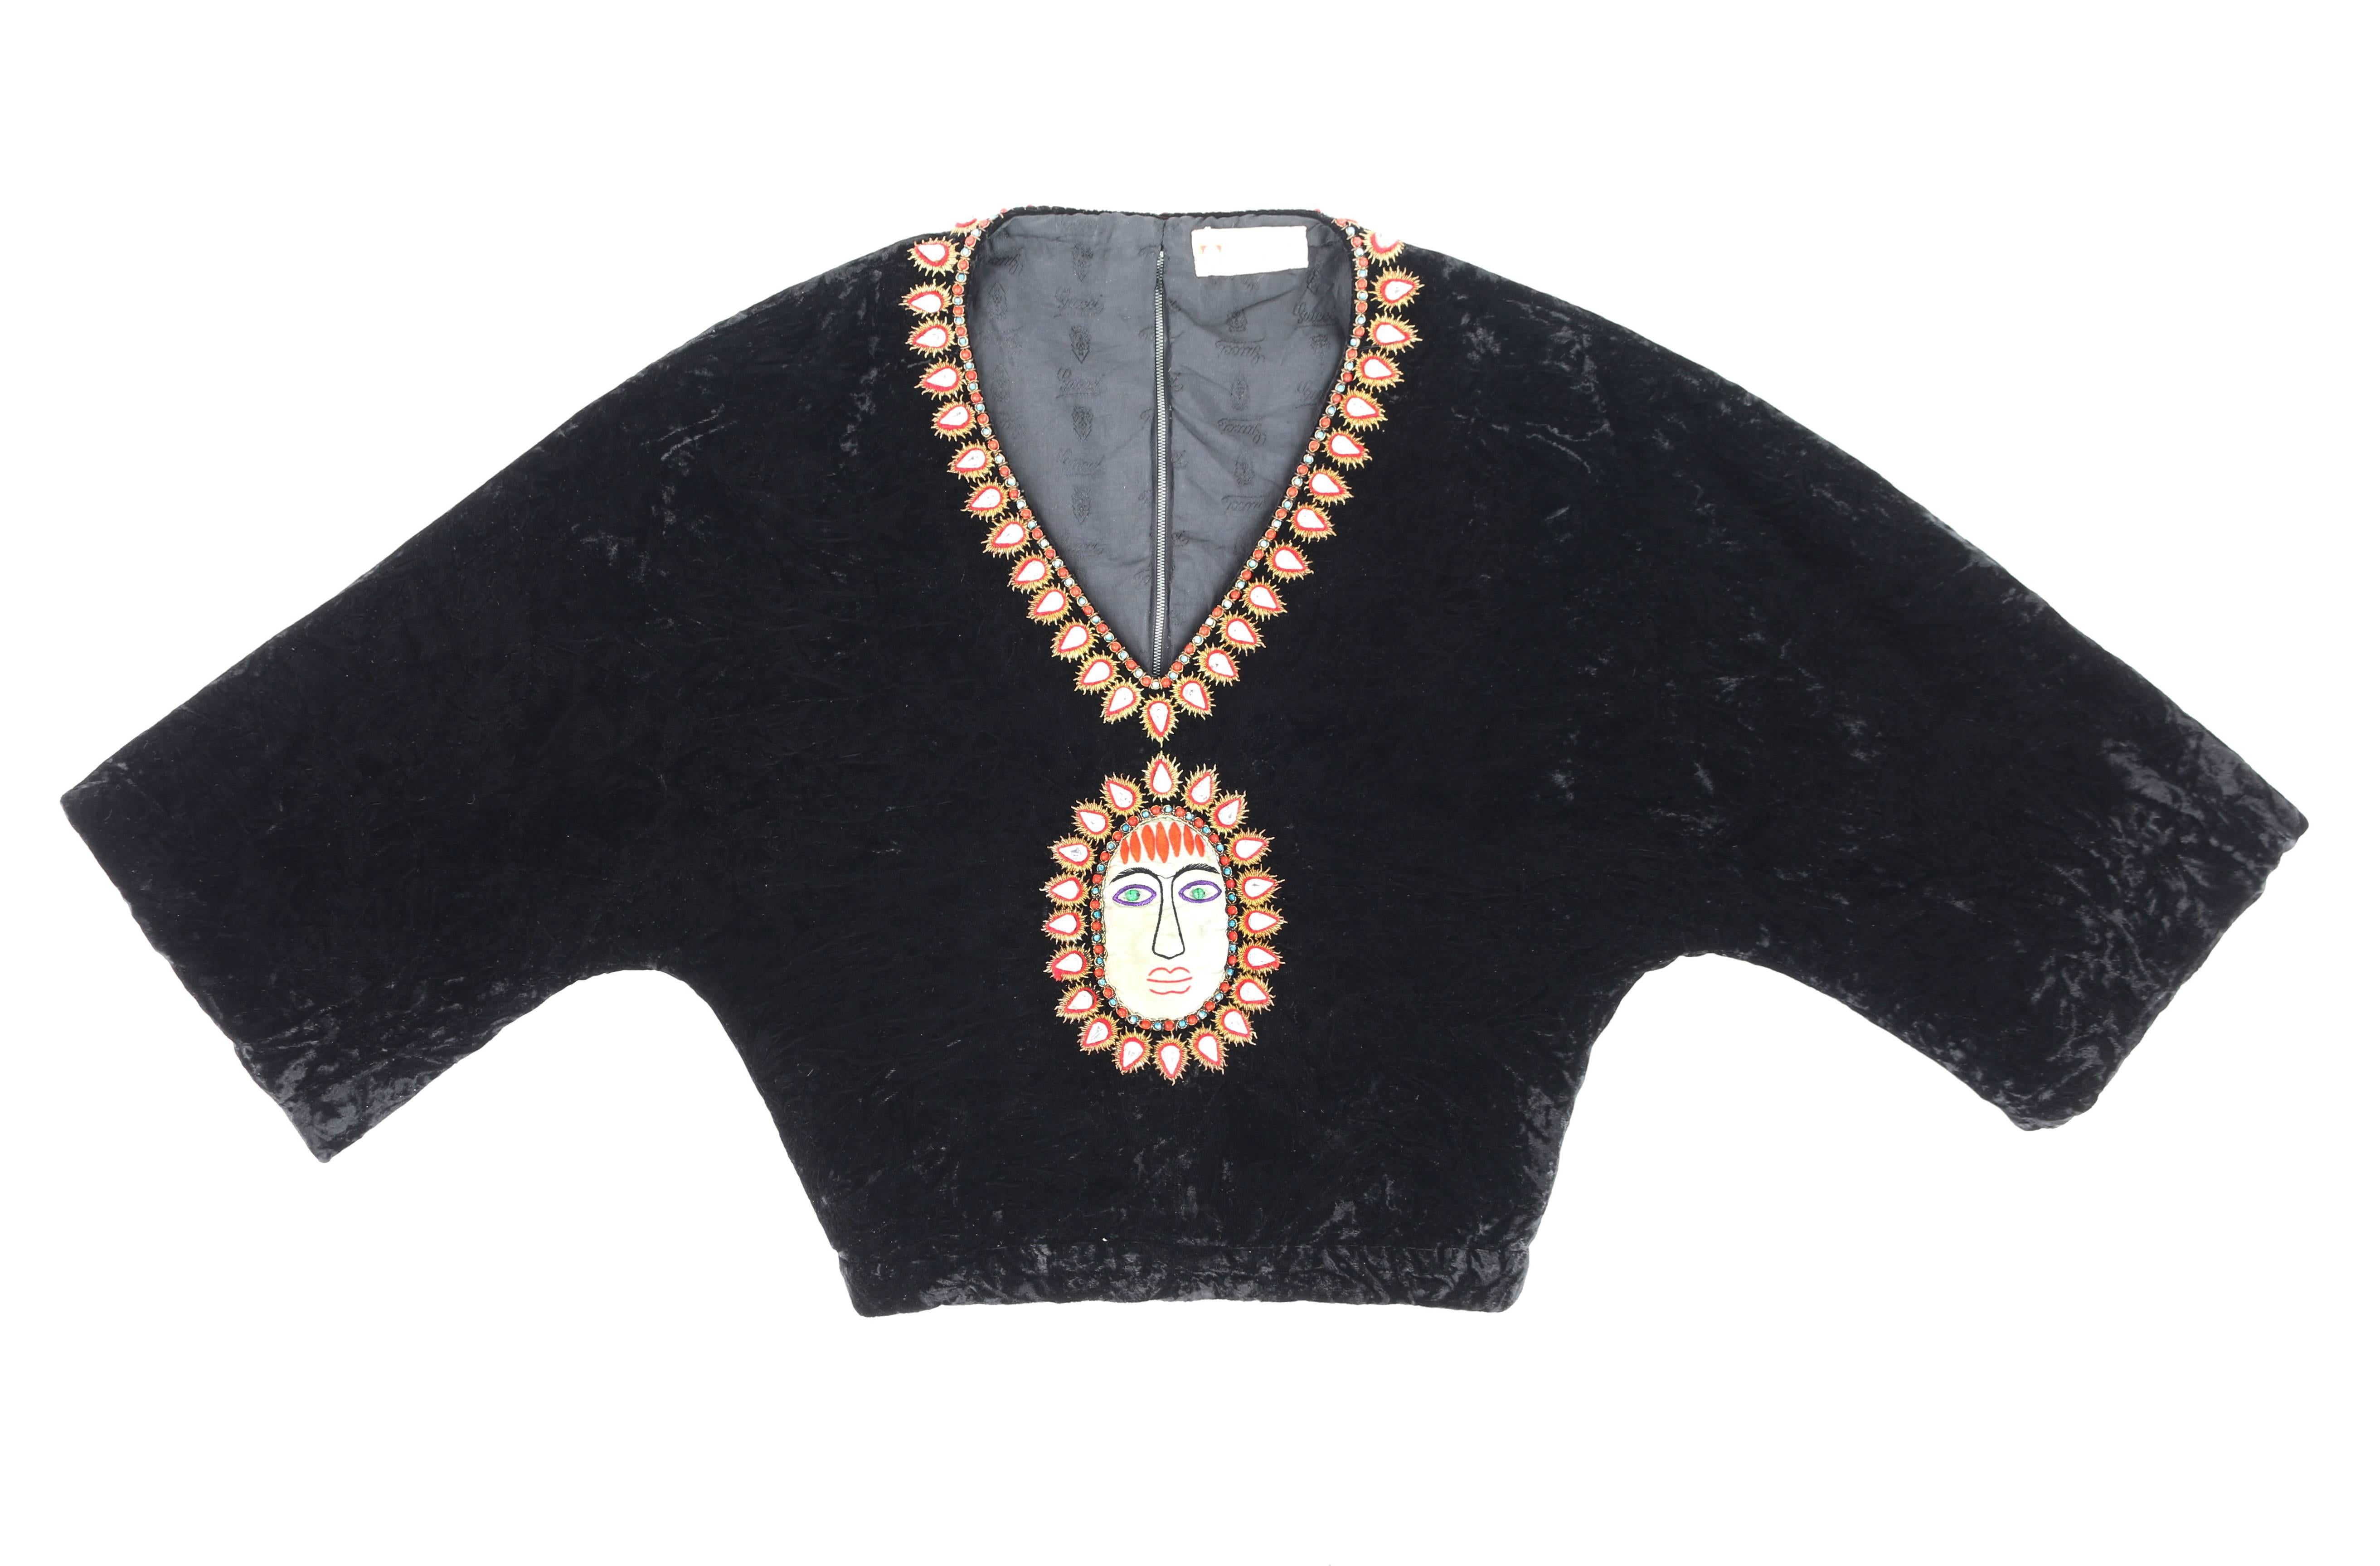 Äußerst seltene Vintage Gucci c.1970's schwarz gequetscht Samt Bluse abgeschnitten. Bohèmehafte Perlen- und Stickereidetails am Halsausschnitt und in der vorderen Mitte, bestehend aus blauen und roten runden Glasperlen, facettierten